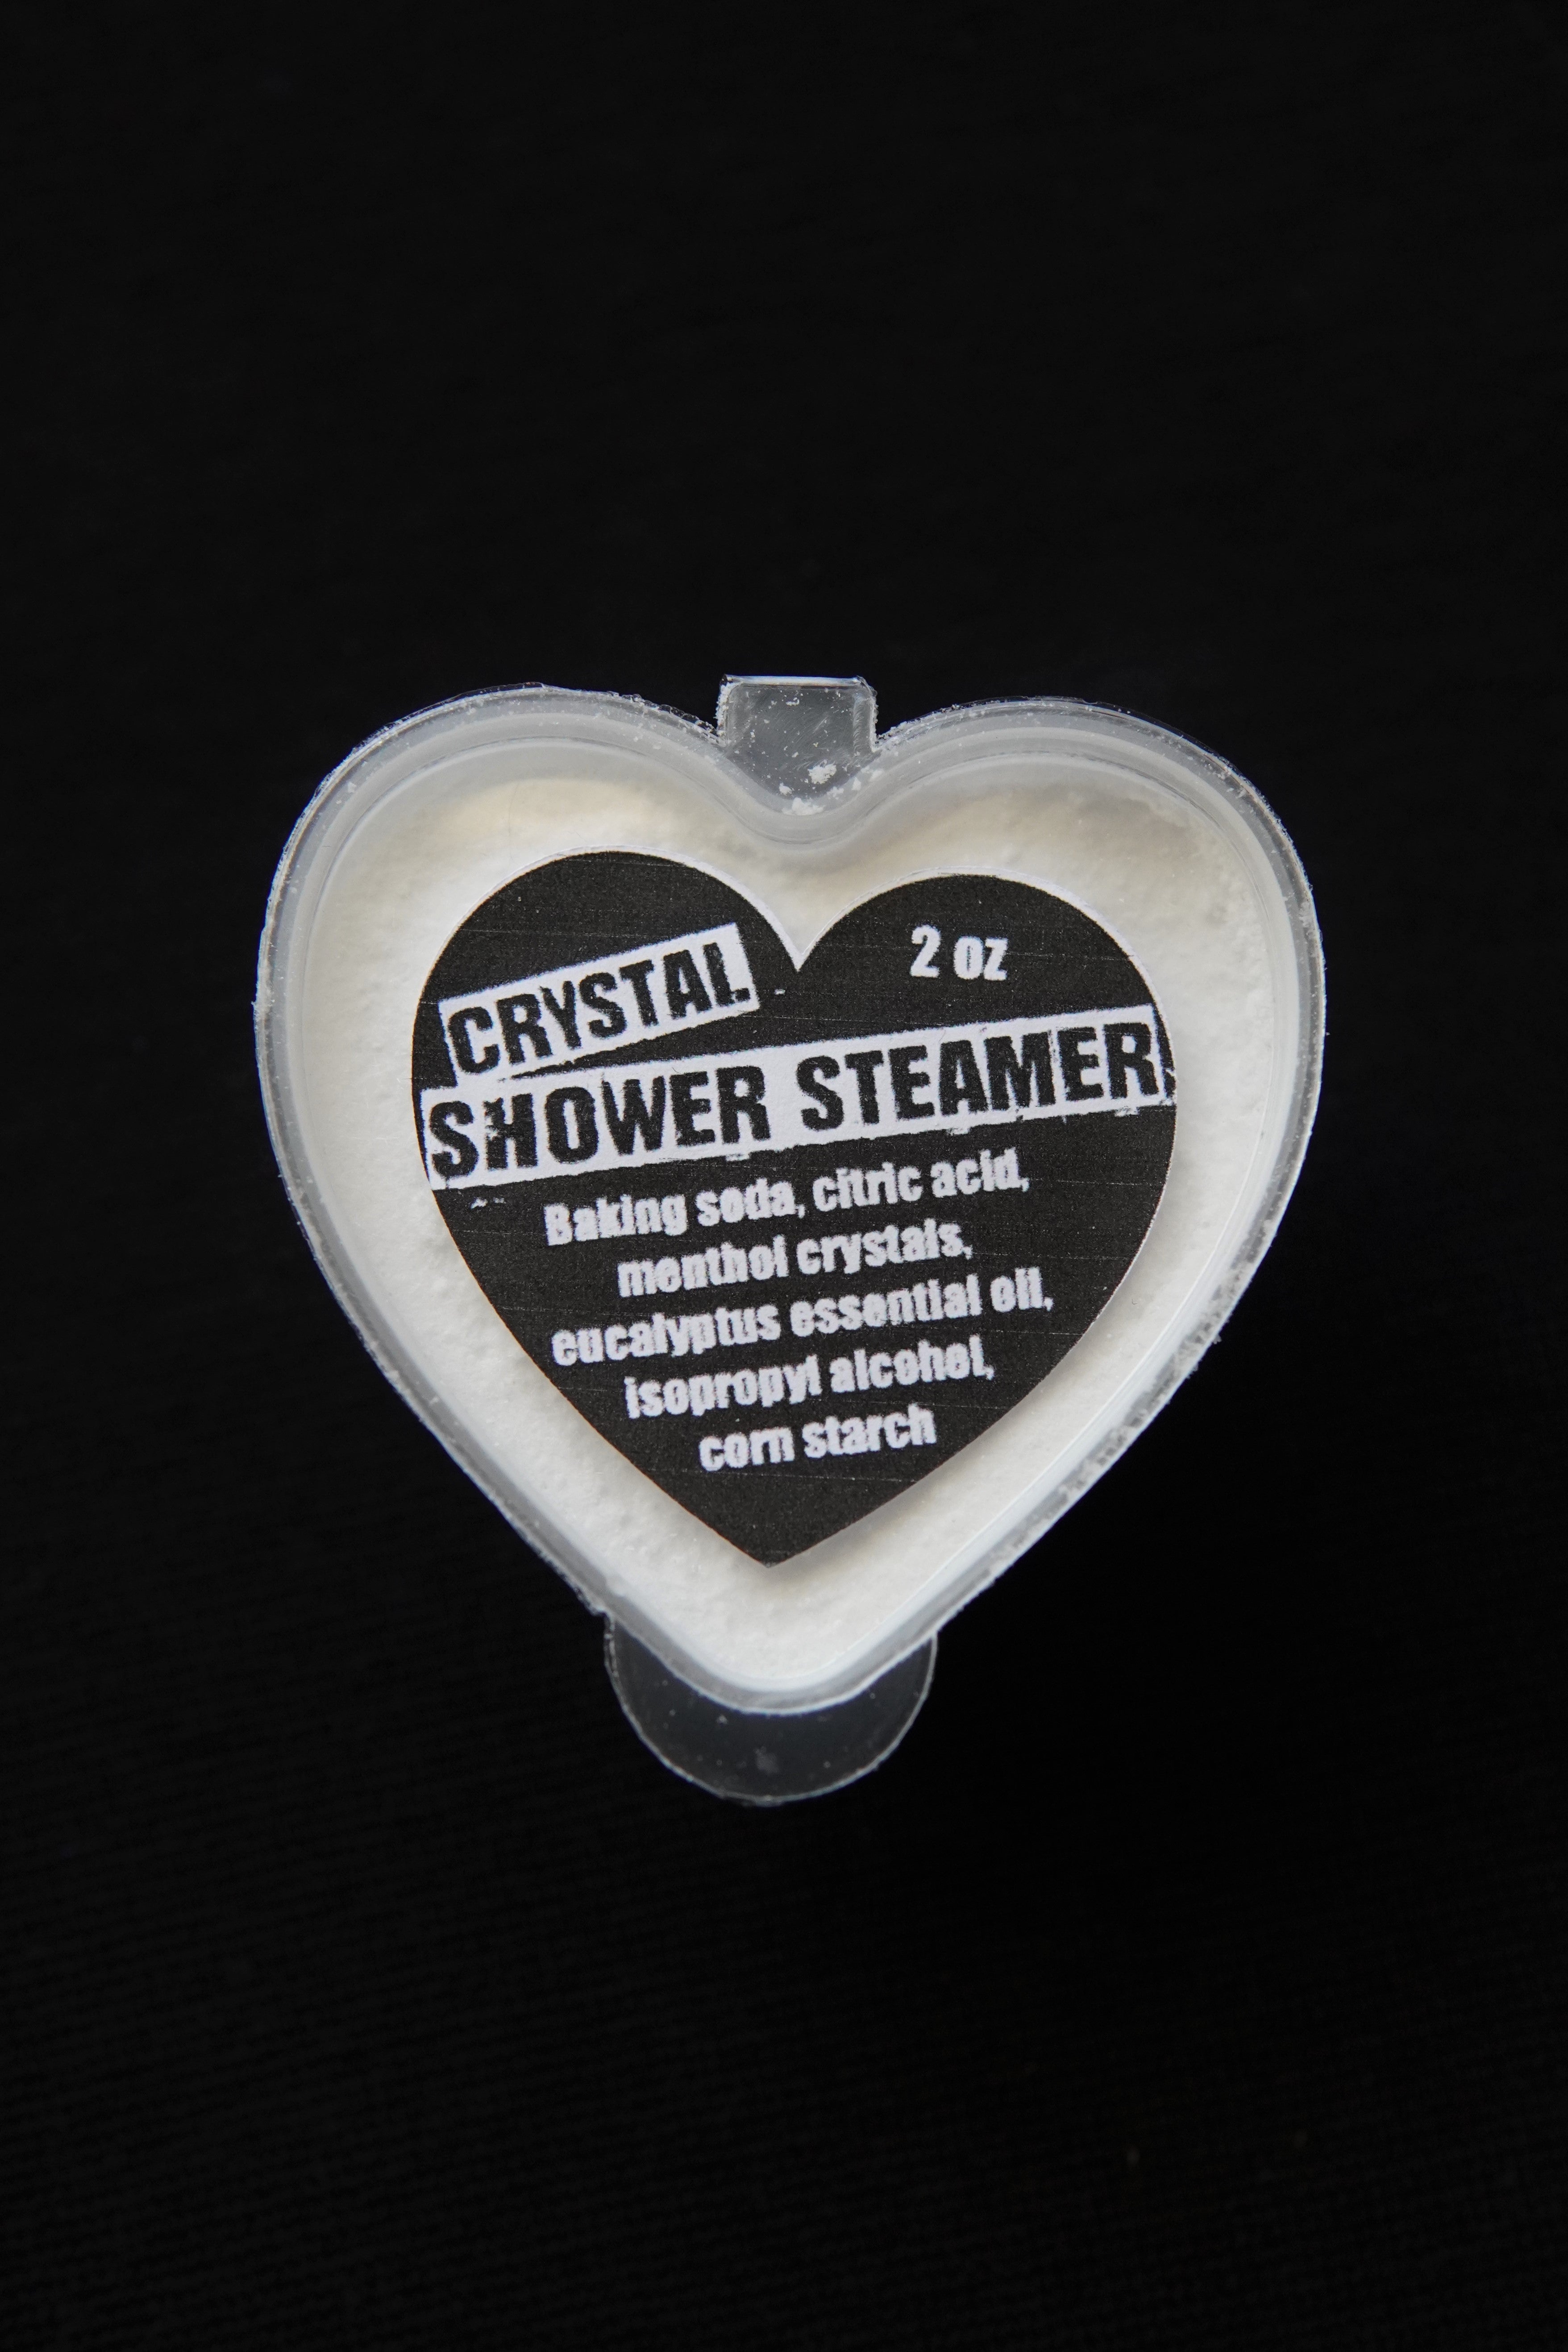 CRYSTAL shower steamer